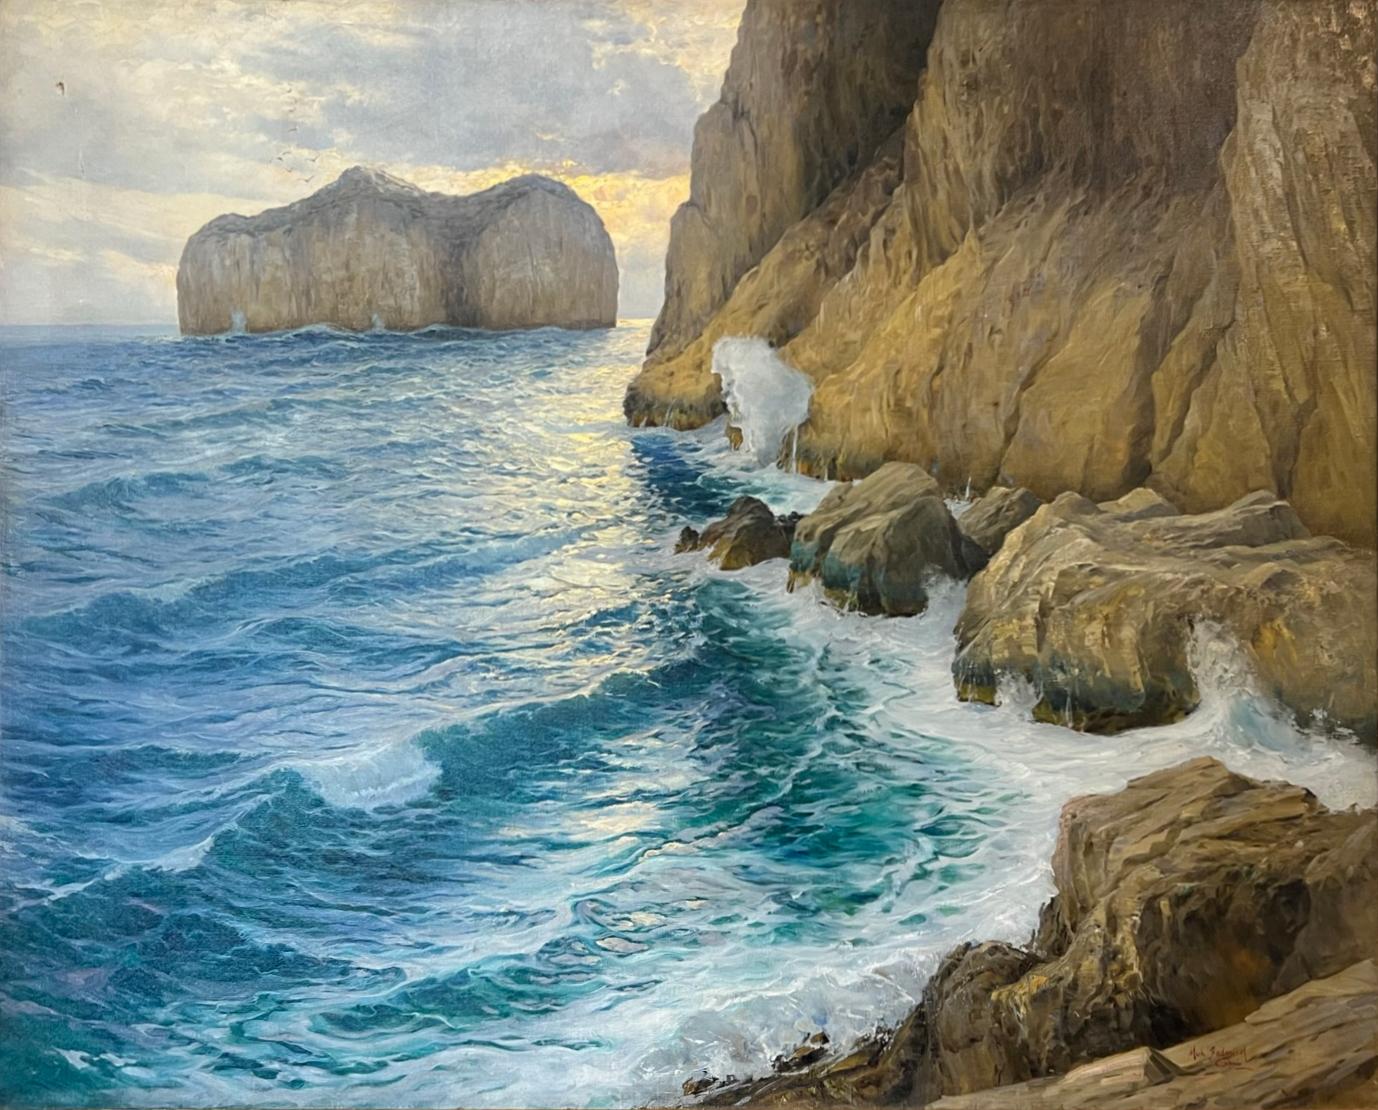 MONUMENTAL Impressionistische Meereslandschaft des CAPRI, IT – Painting von Cavalier Michele Federico